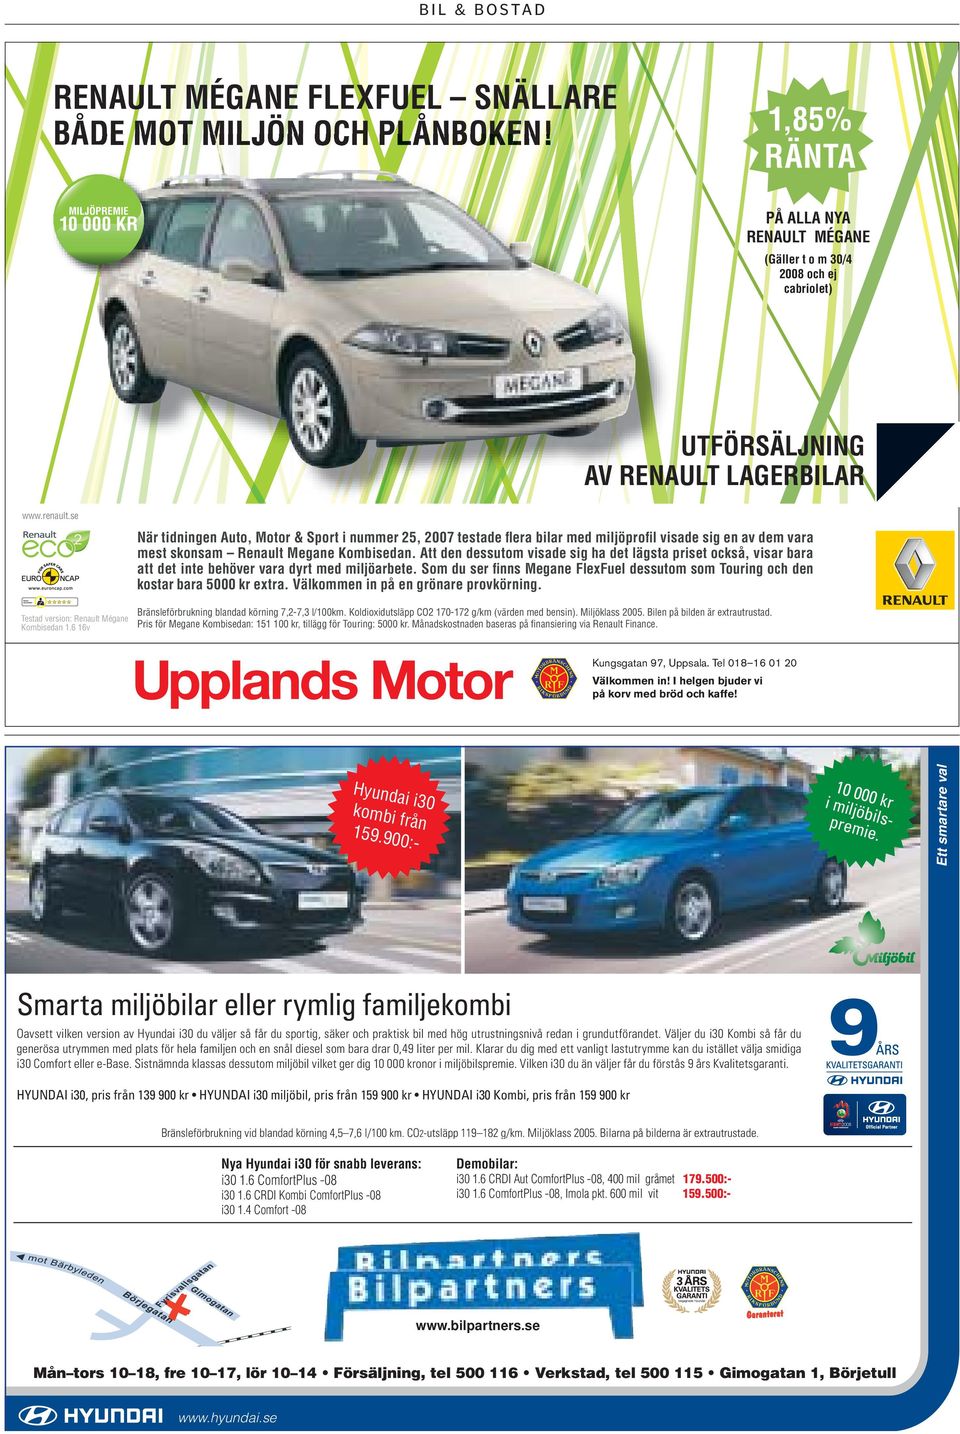 6 16v När tidningen Auto, Motor & Sport i nummer 25, 2007 testade fl era bilar med miljöprofi l visade sig en av dem vara mest skonsam Renault Megane Kombisedan.